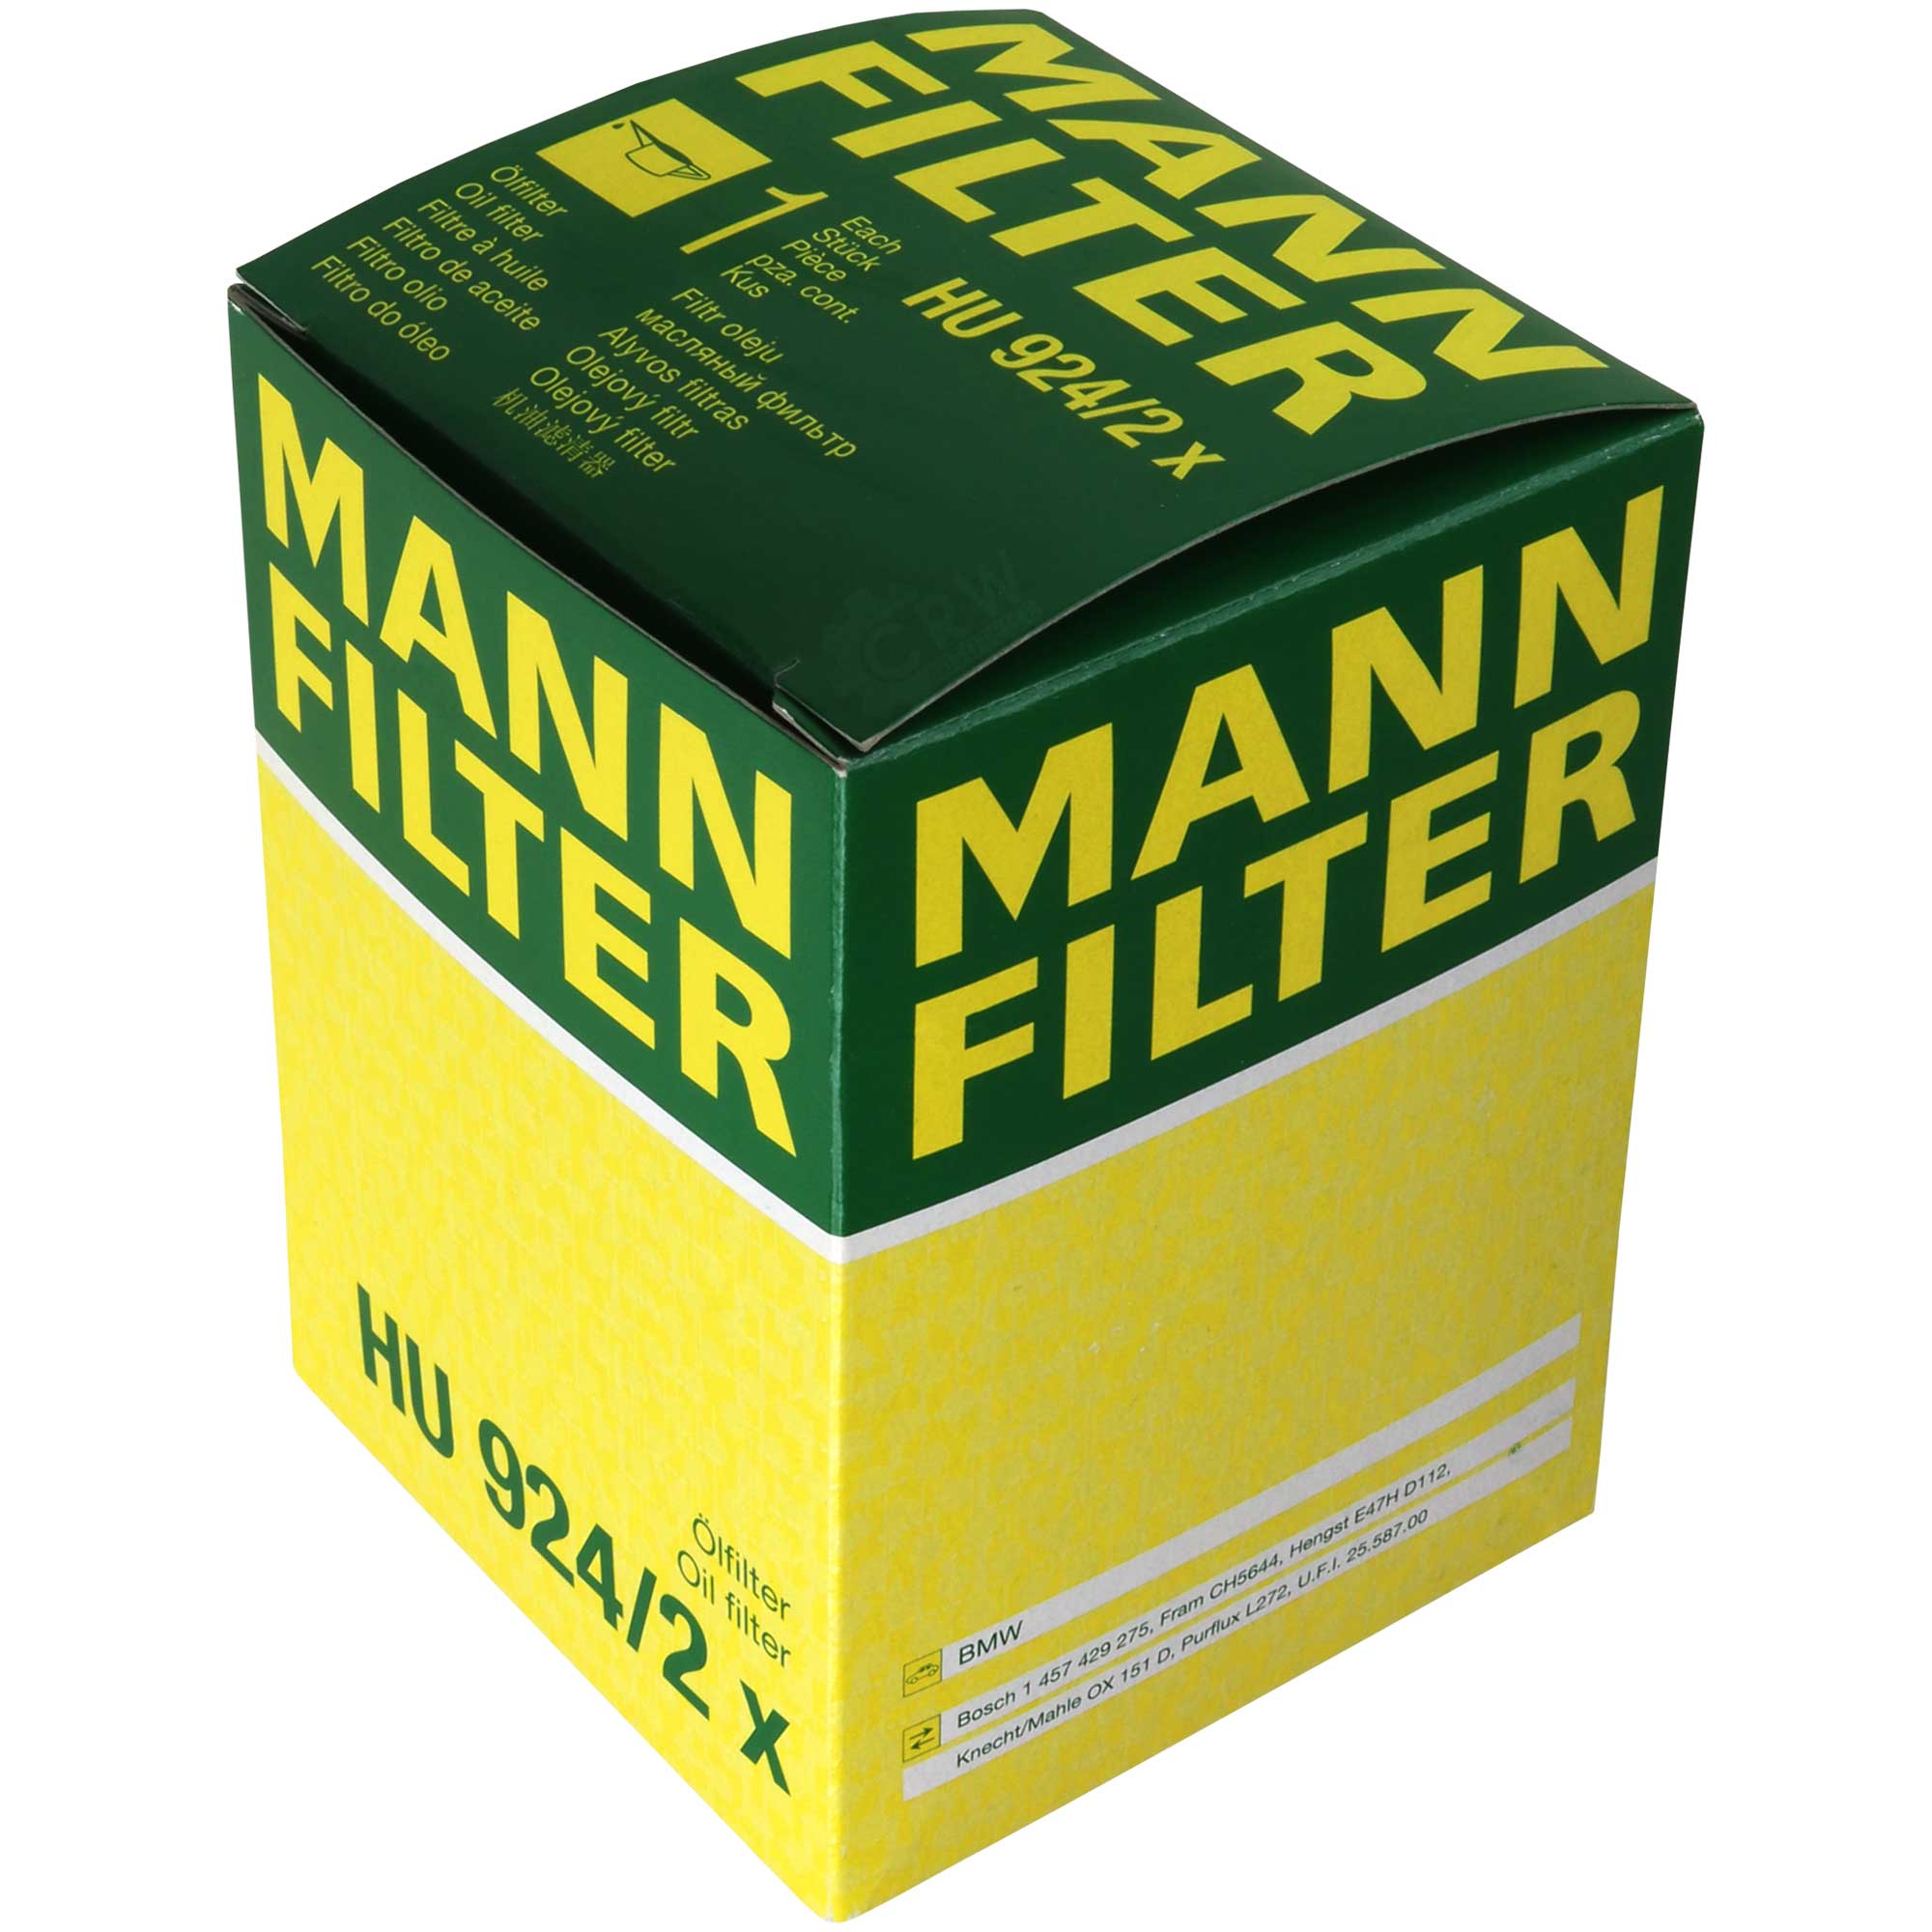 MANN-FILTER Ölfilter HU 924/2 x Oil Filter